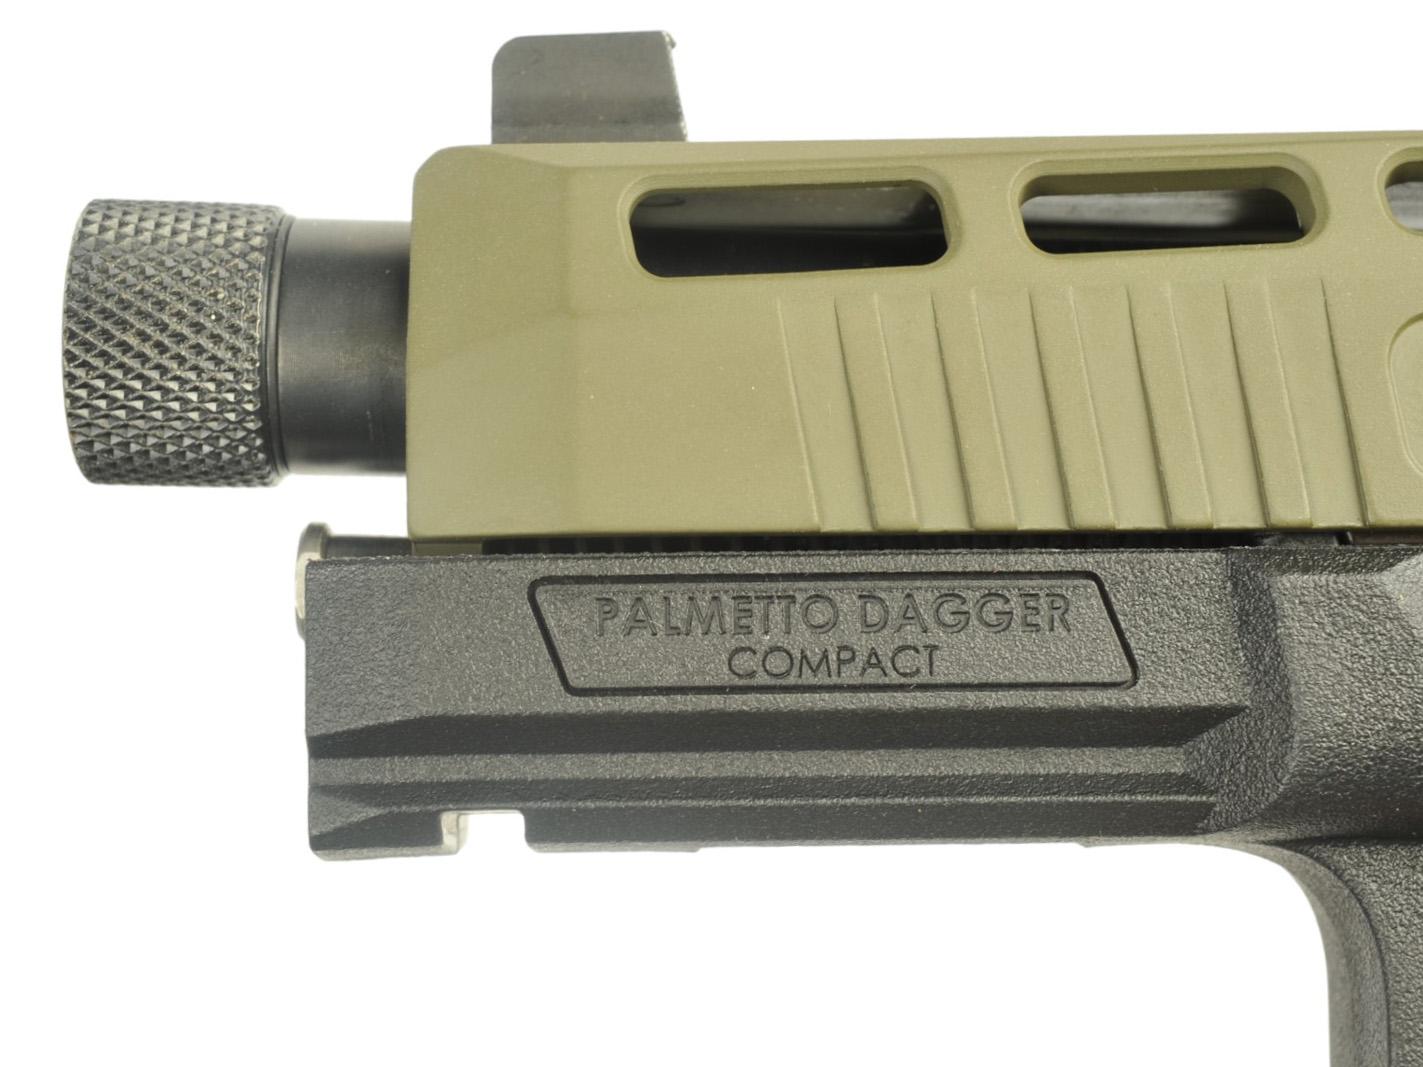 Palmetto State Armory Dagger 9MM Semi-auto Pistol FFL Required: FG129682(EDN1)